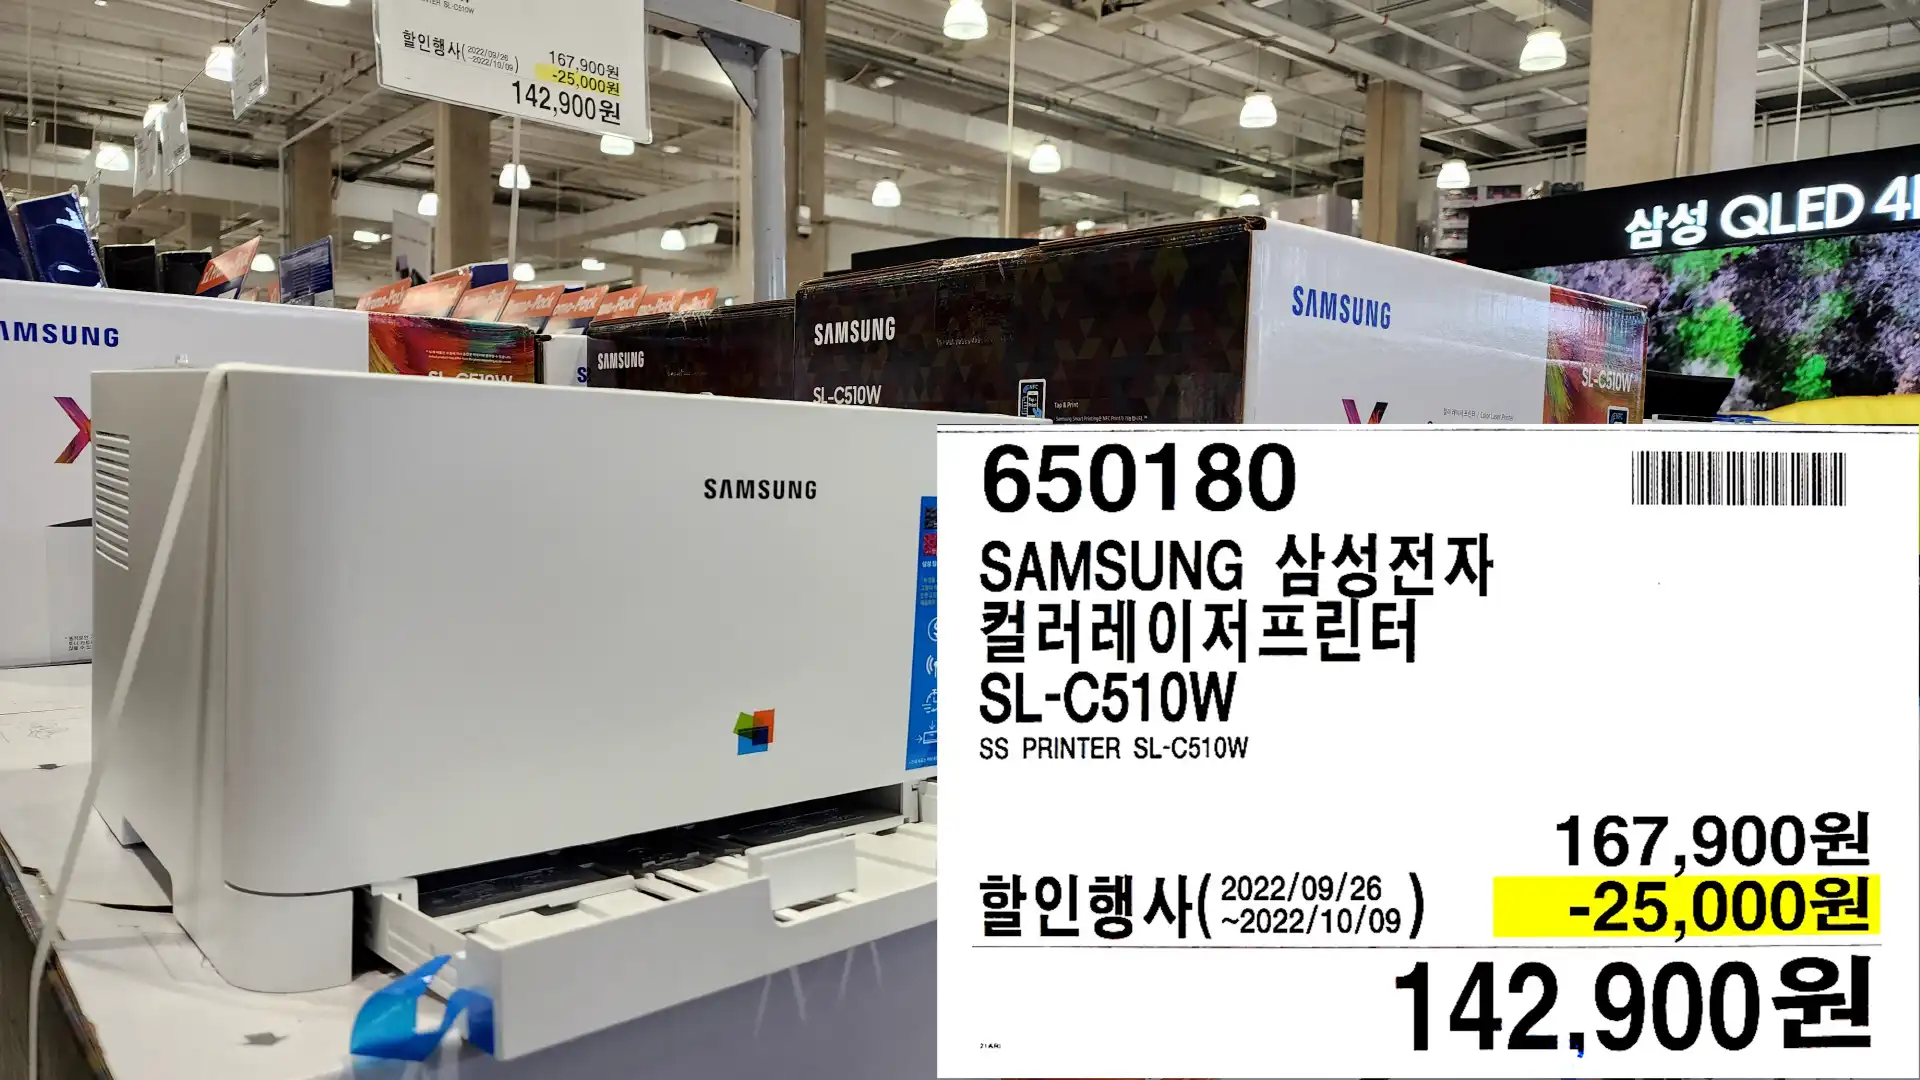 SAMSUNG 삼성전자
컬러레이저프린터
SL-C510W
SS PRINTER SL-C510W
142&#44;900원